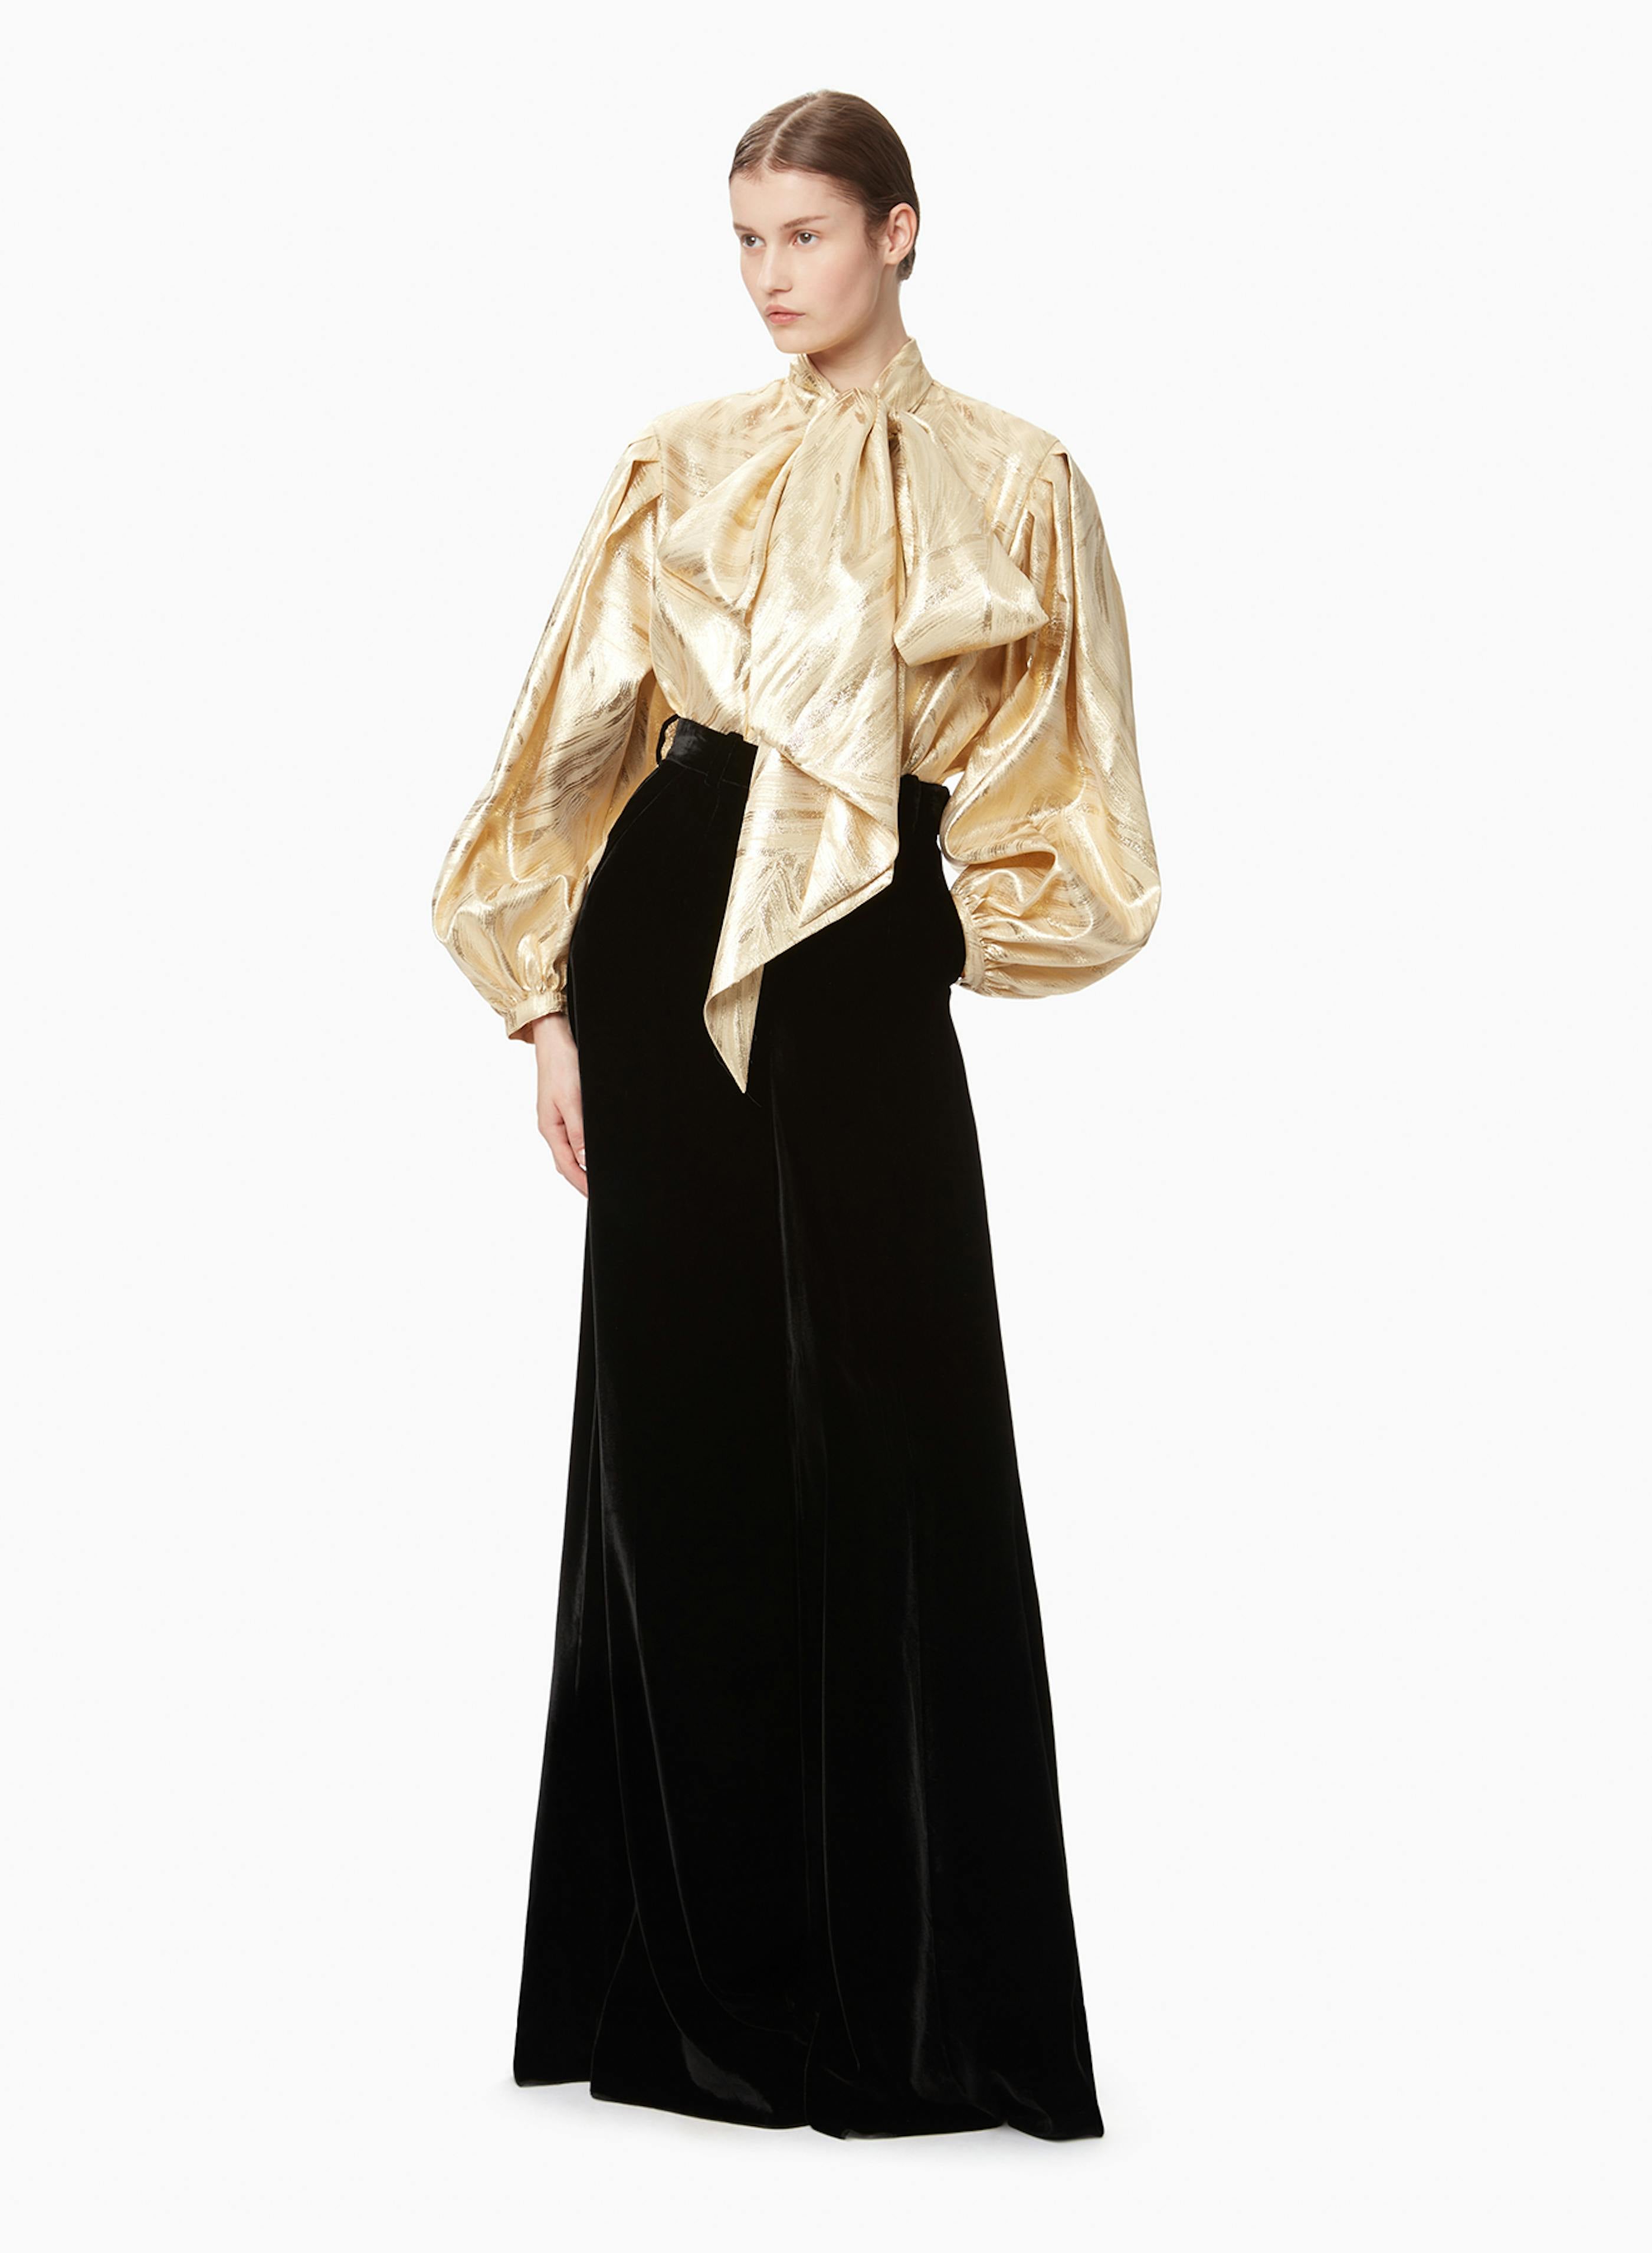 Women's shirts - Fashion - Nina Ricci